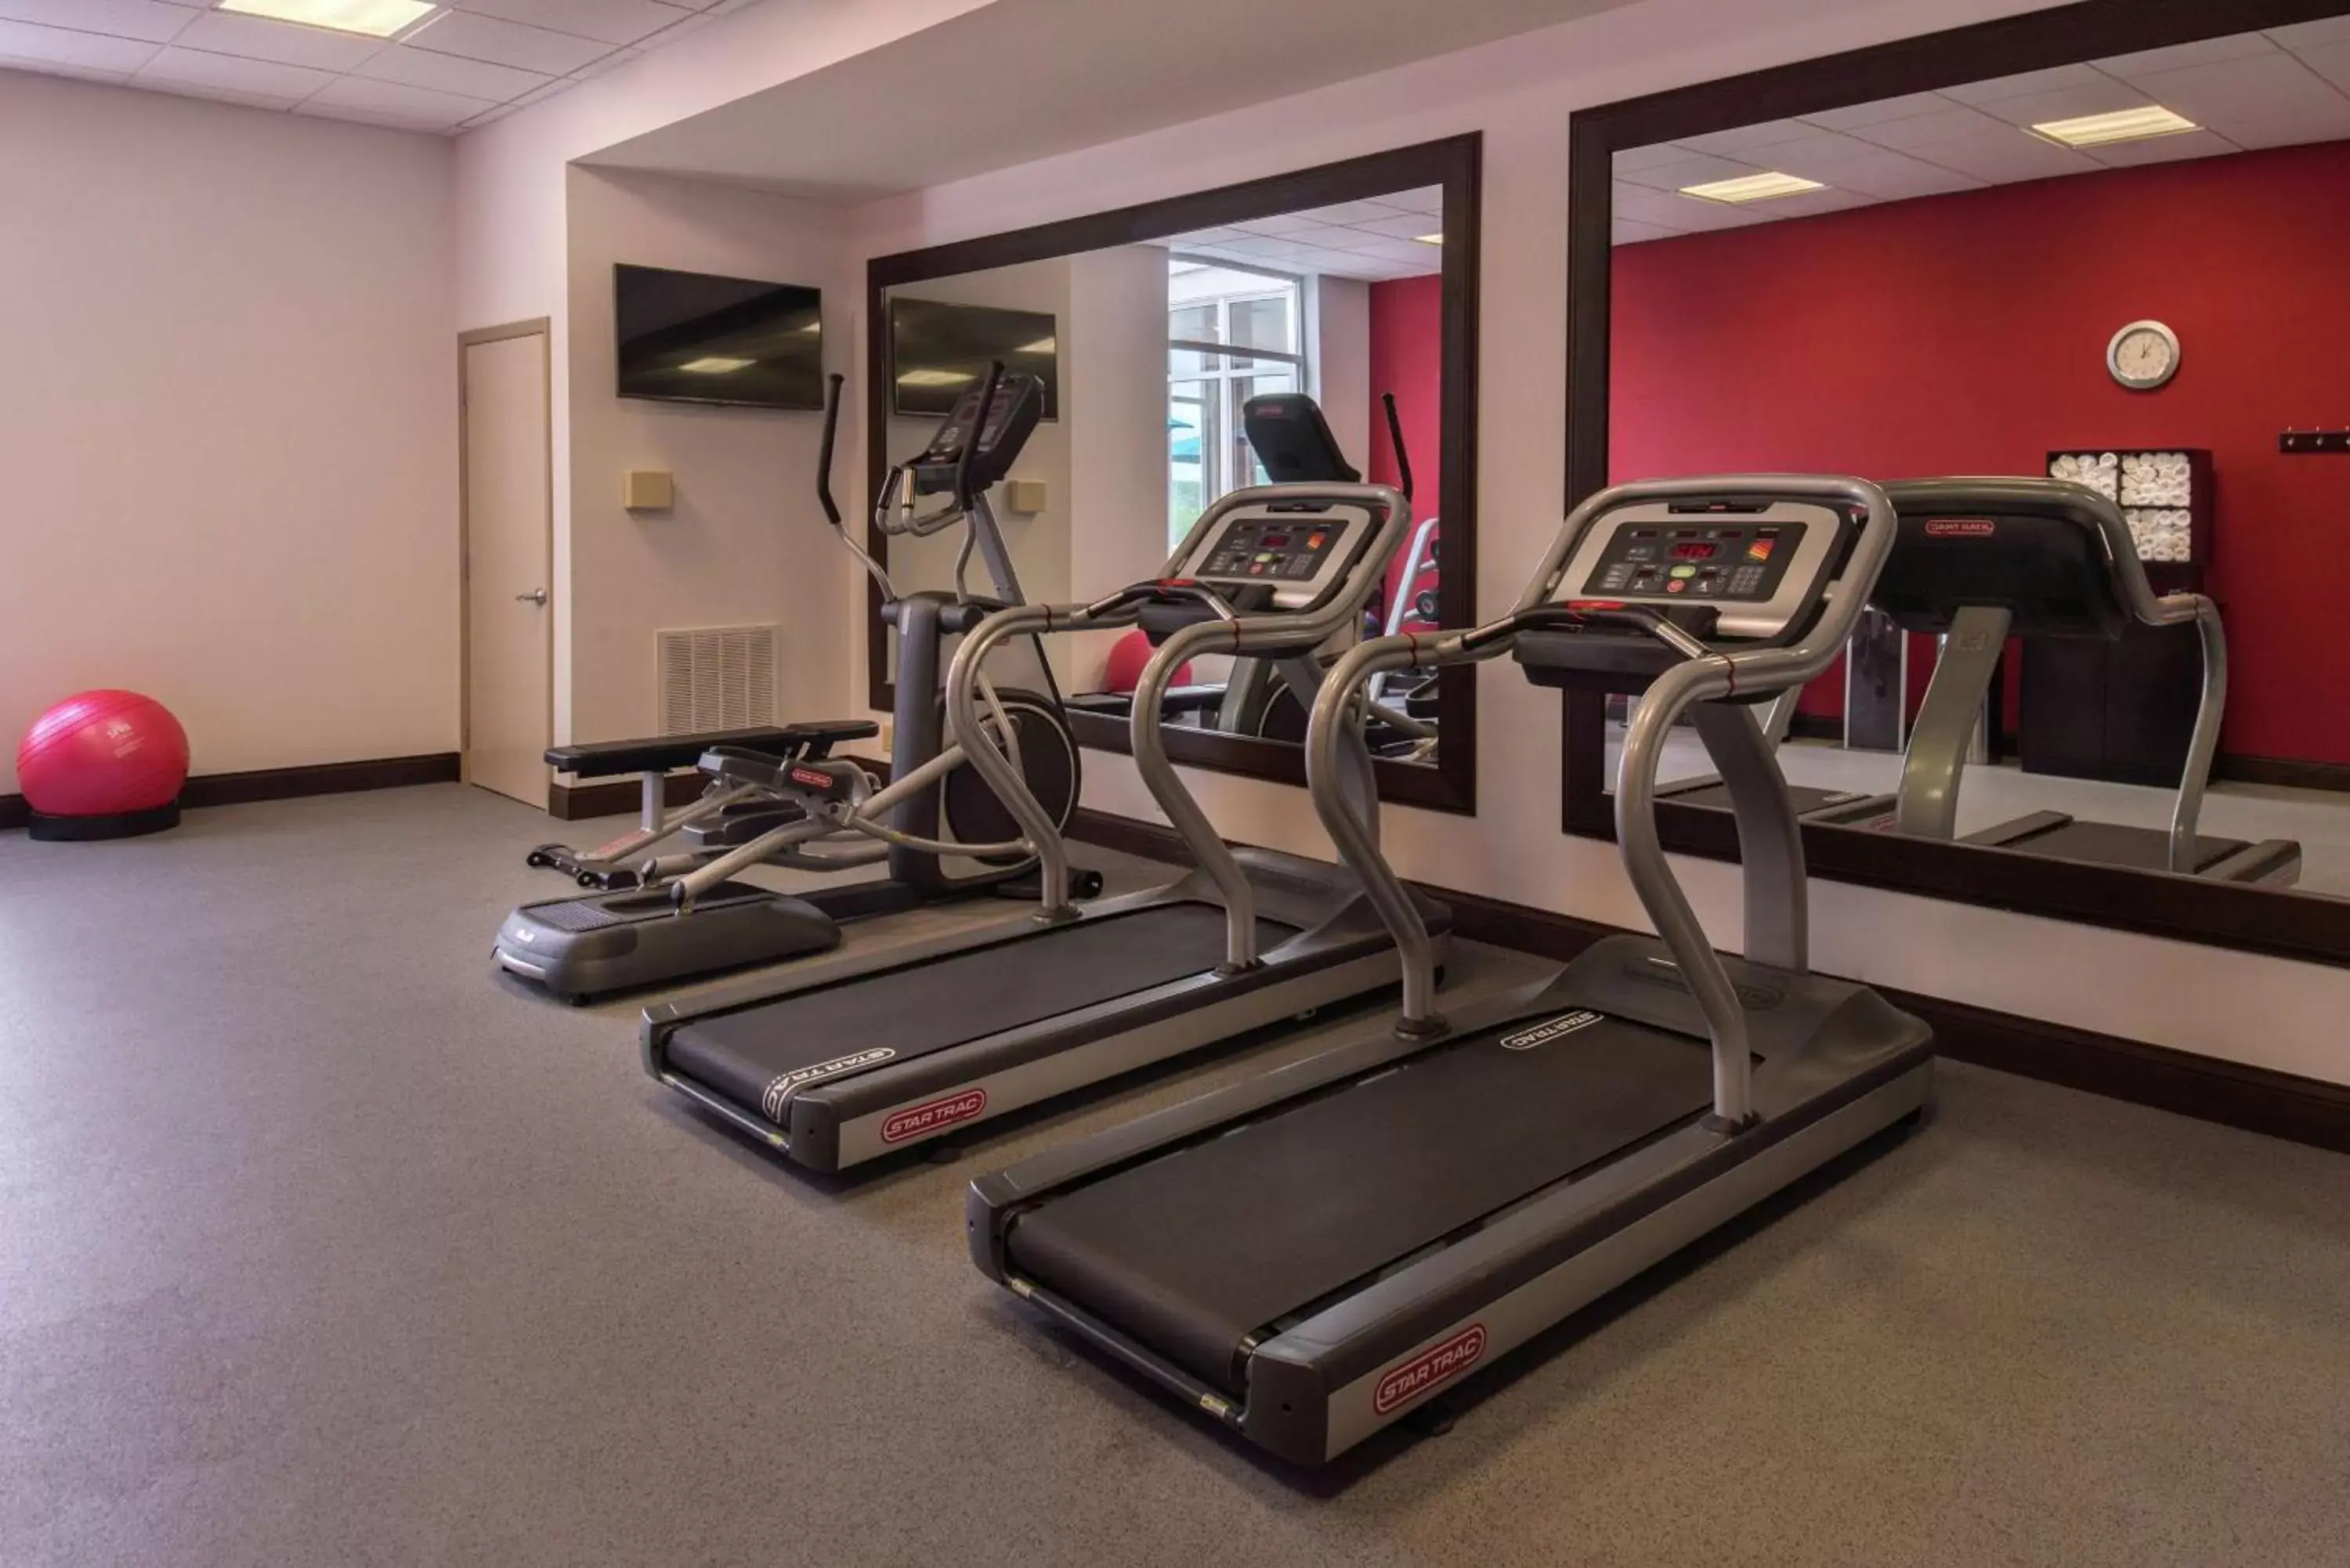 Fitness centre/facilities, Fitness Center/Facilities in Hilton Garden Inn Bristol